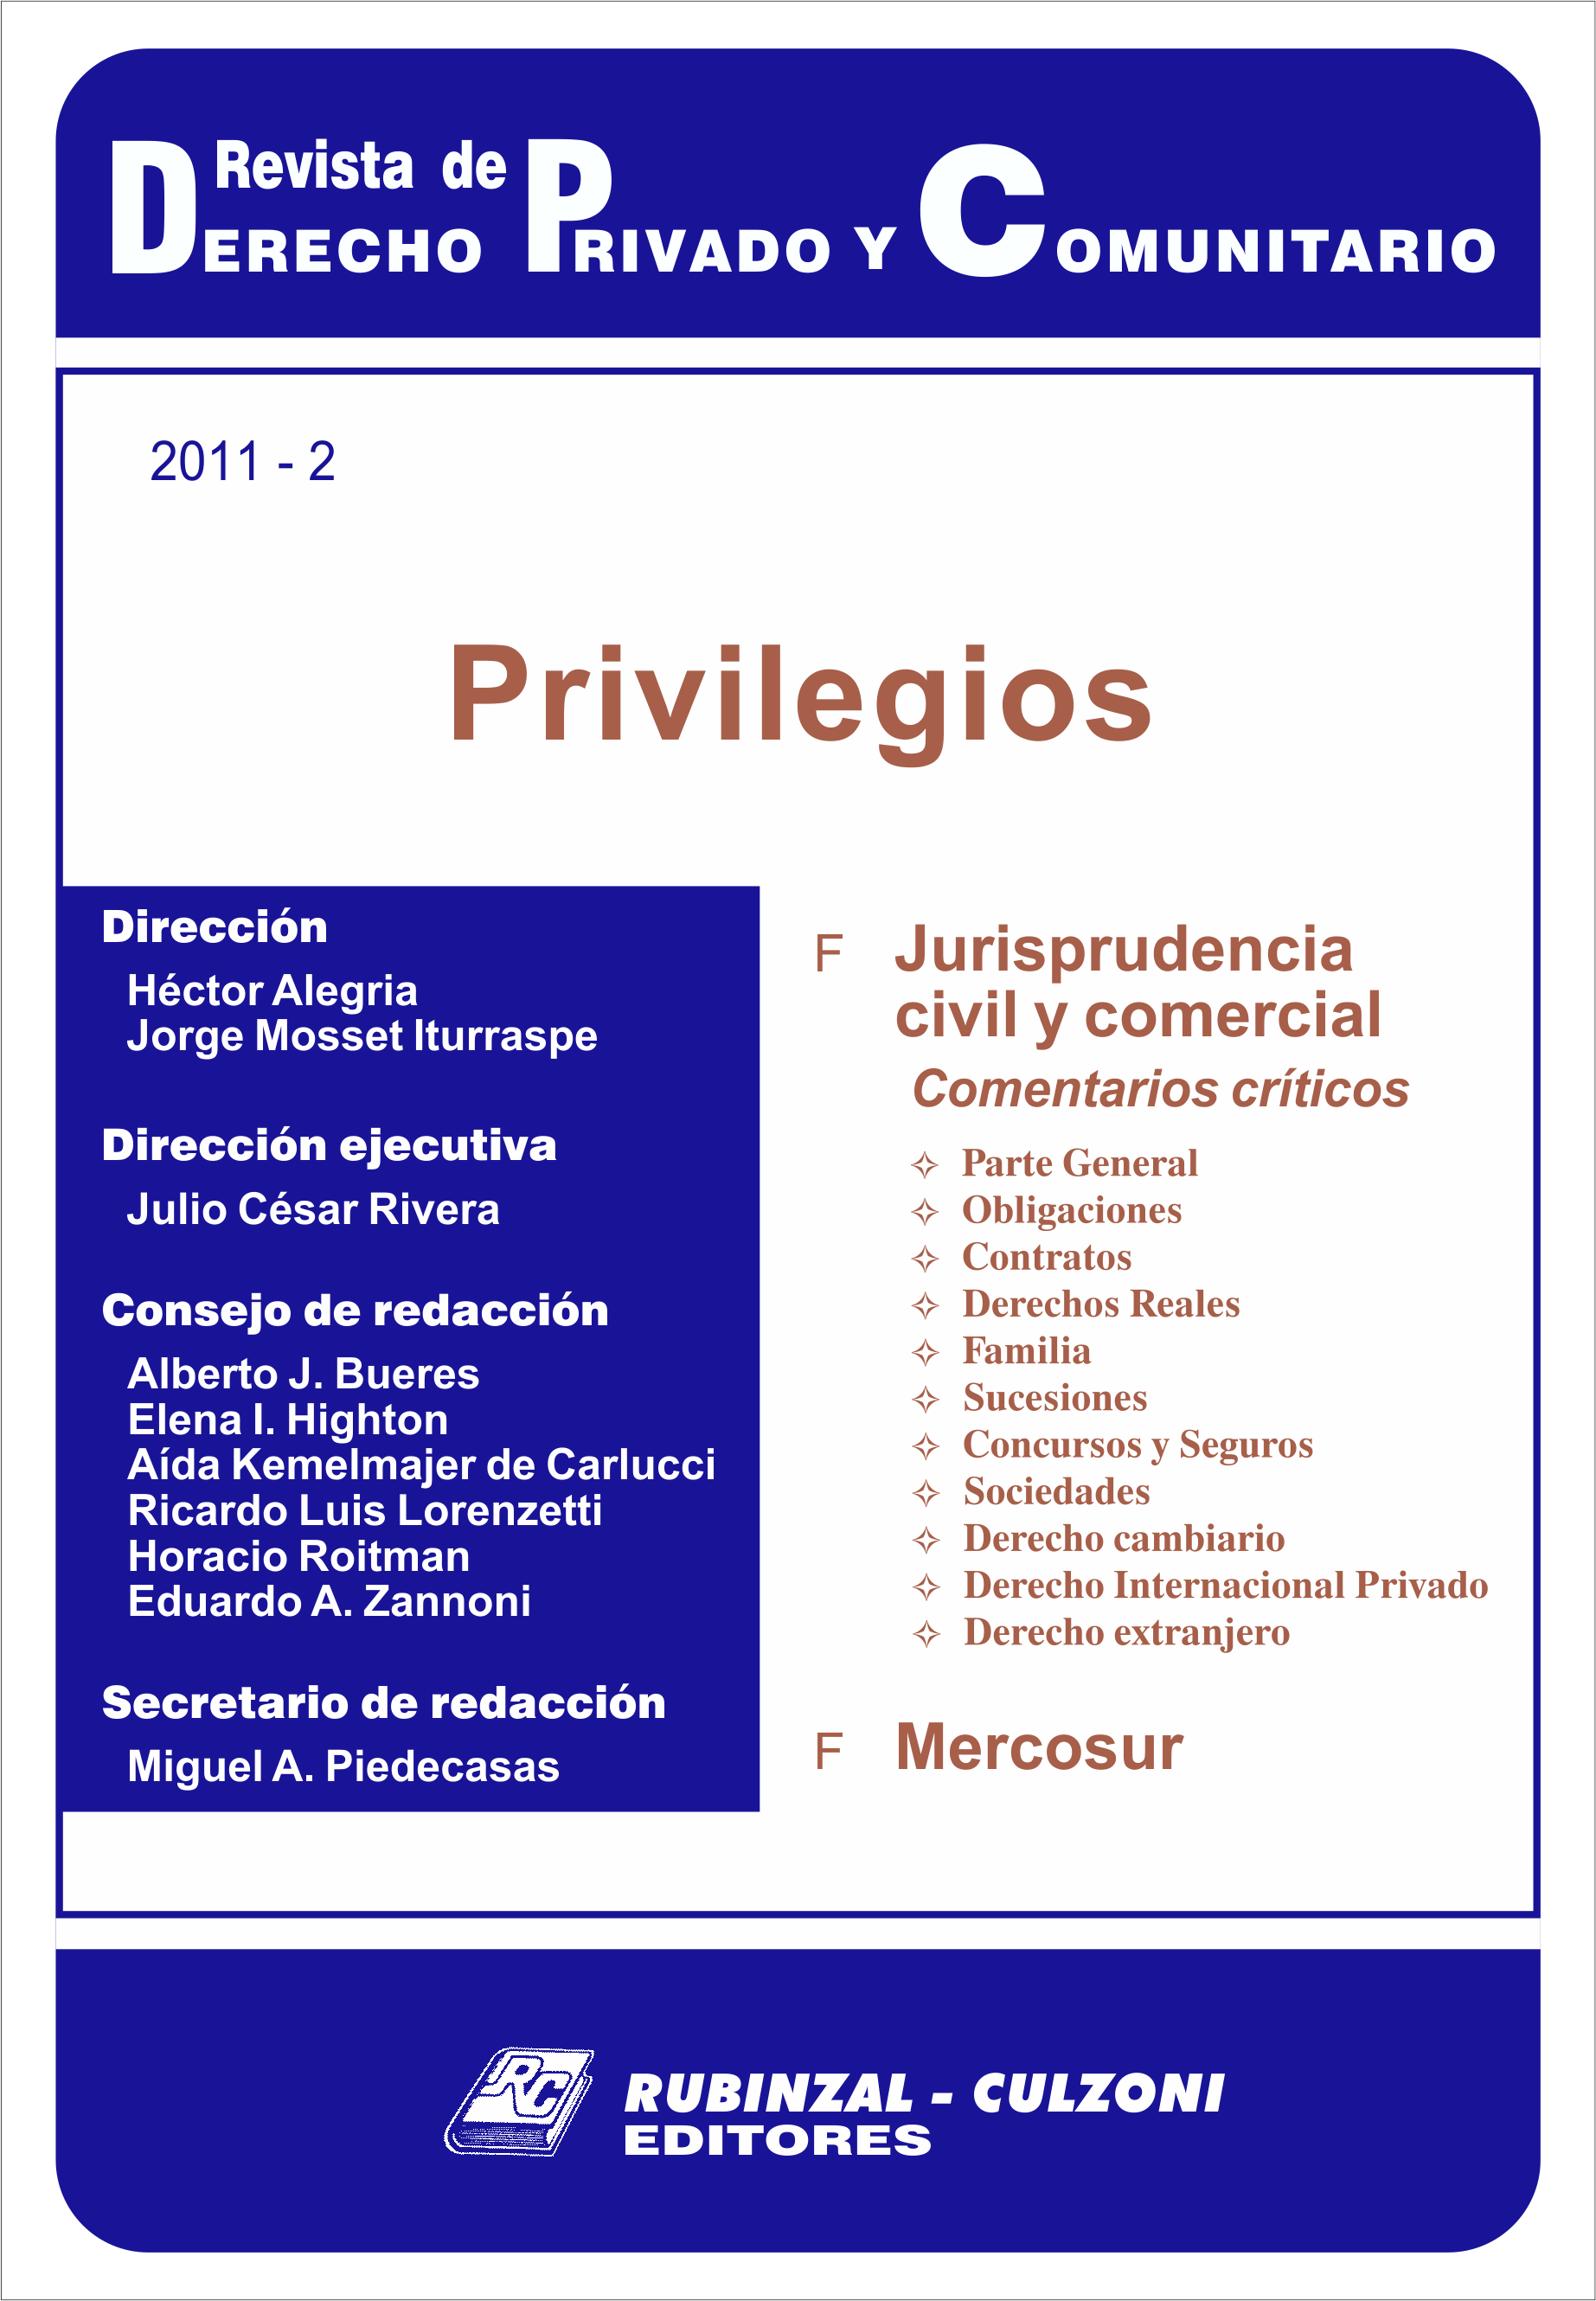 Revista de Derecho Privado y Comunitario - Privilegios.